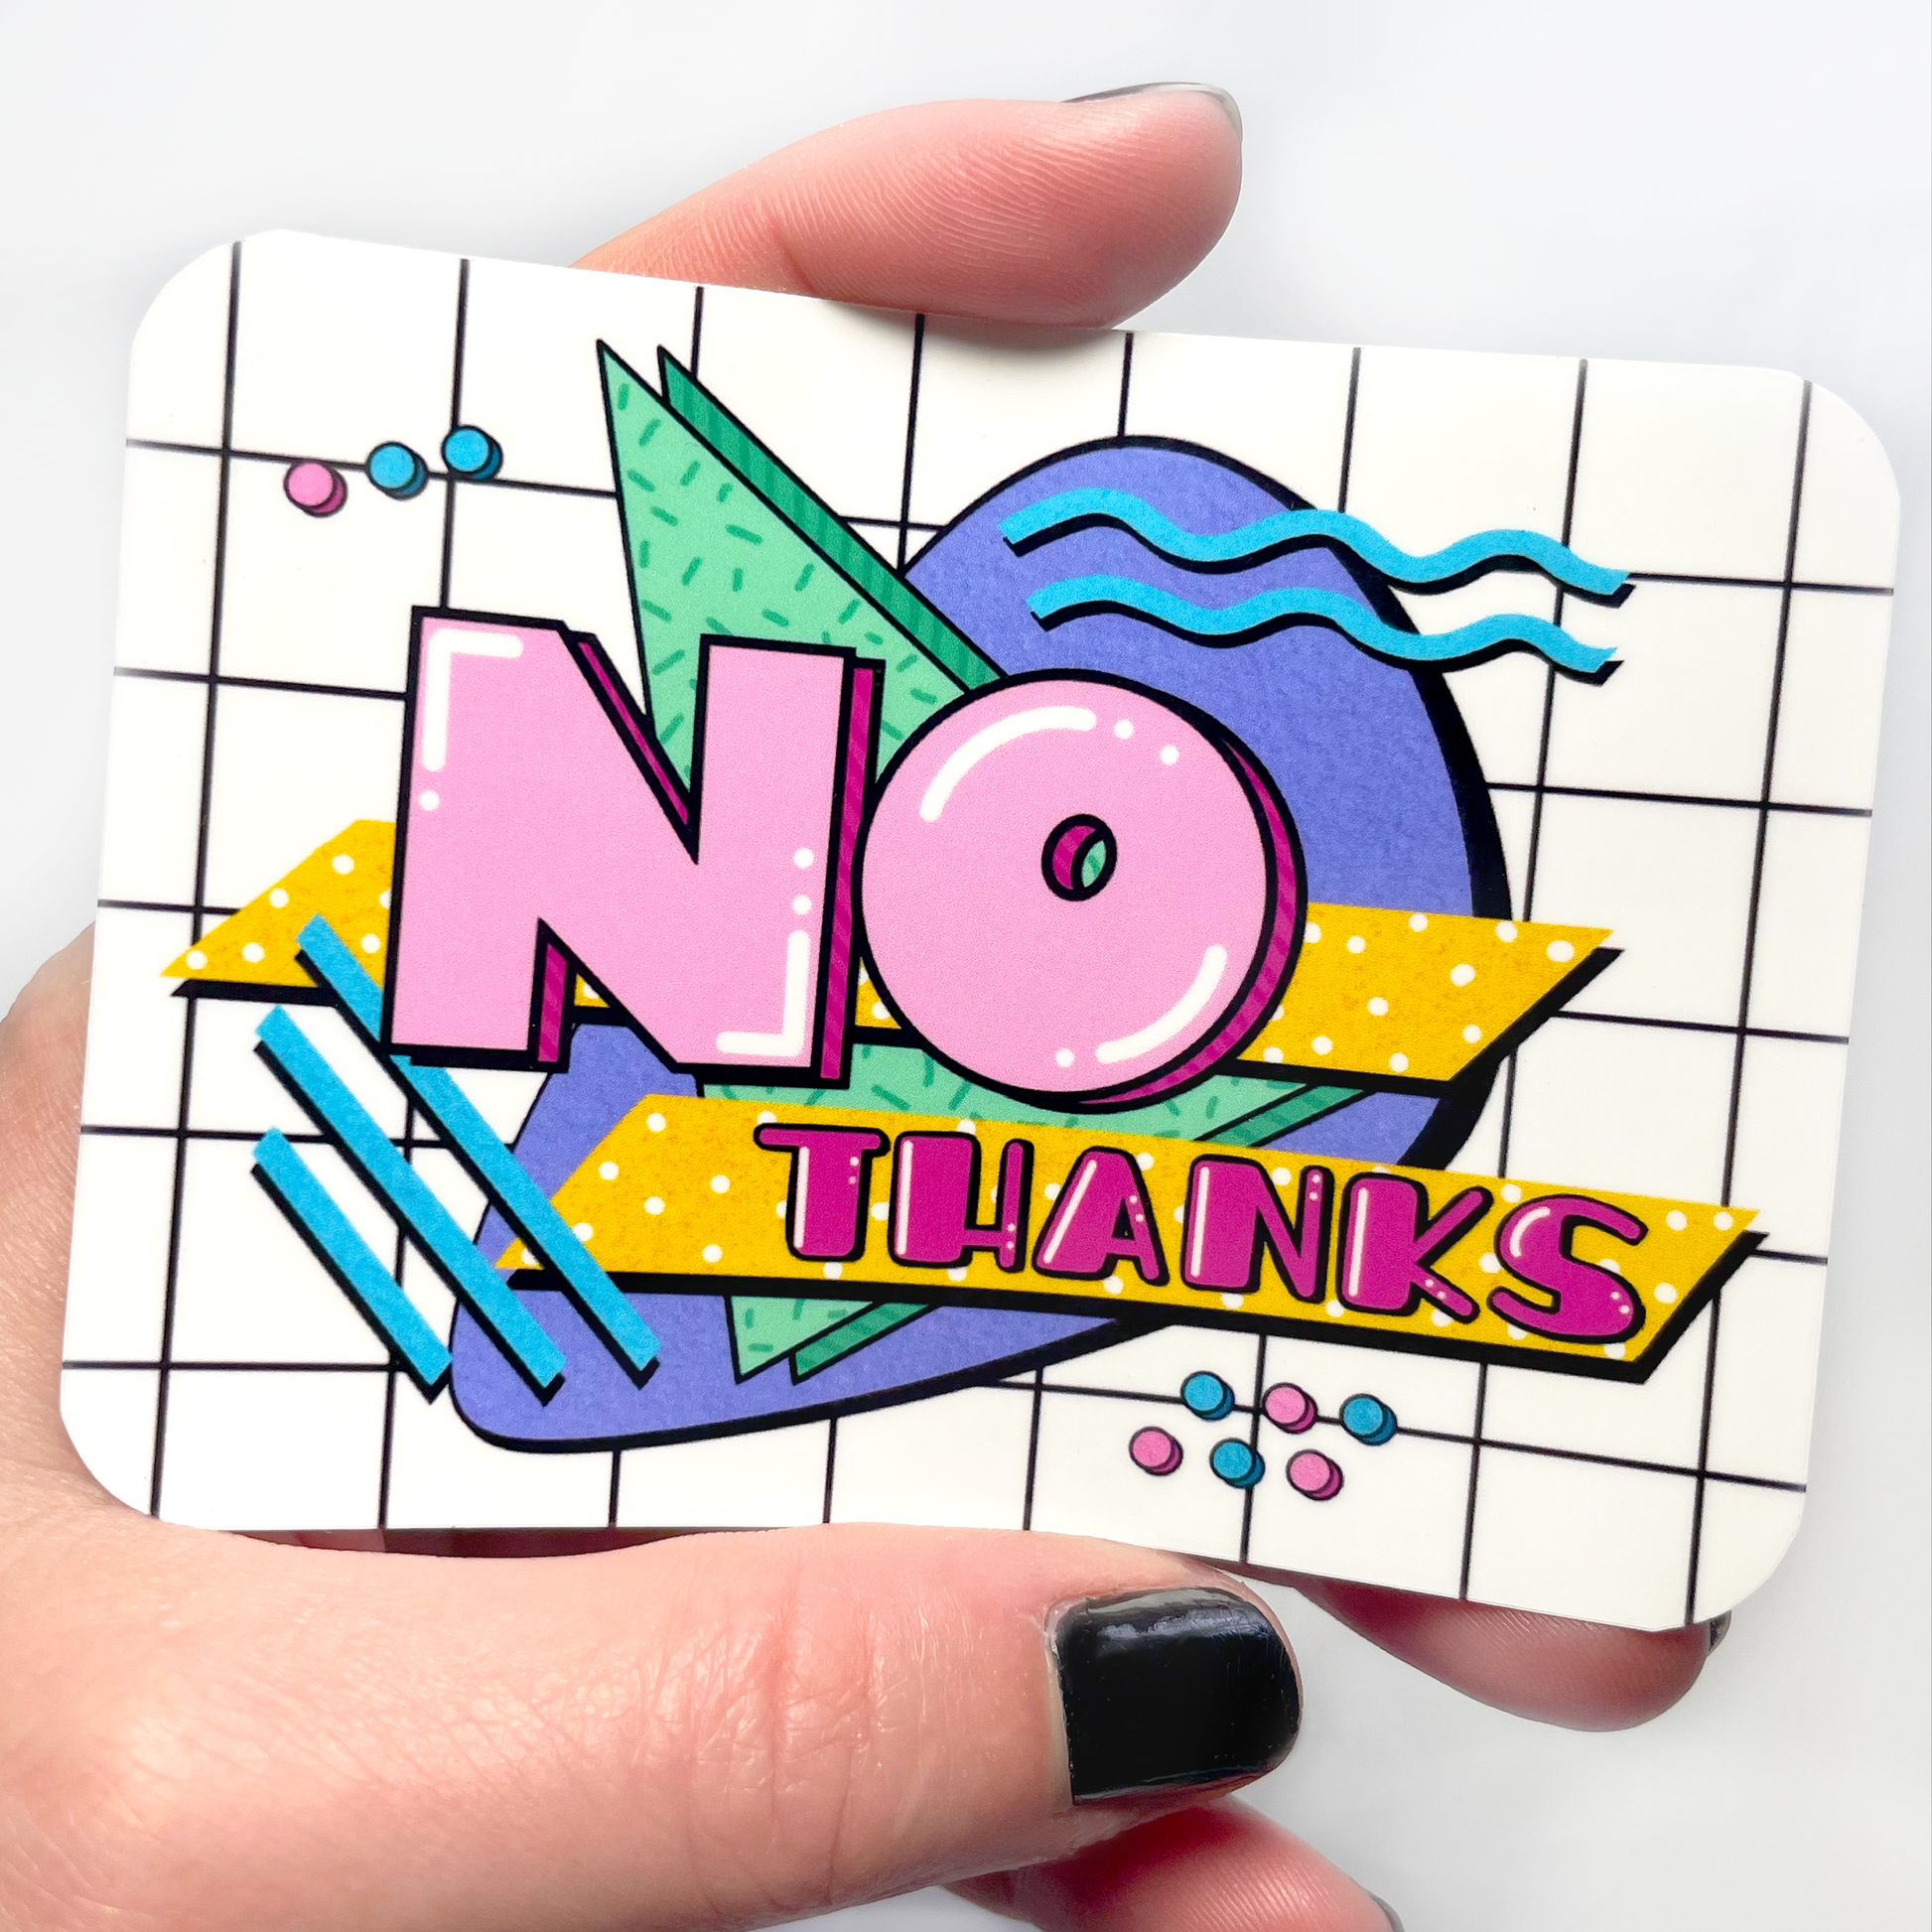 No Thanks' Sticker | Spreadshirt